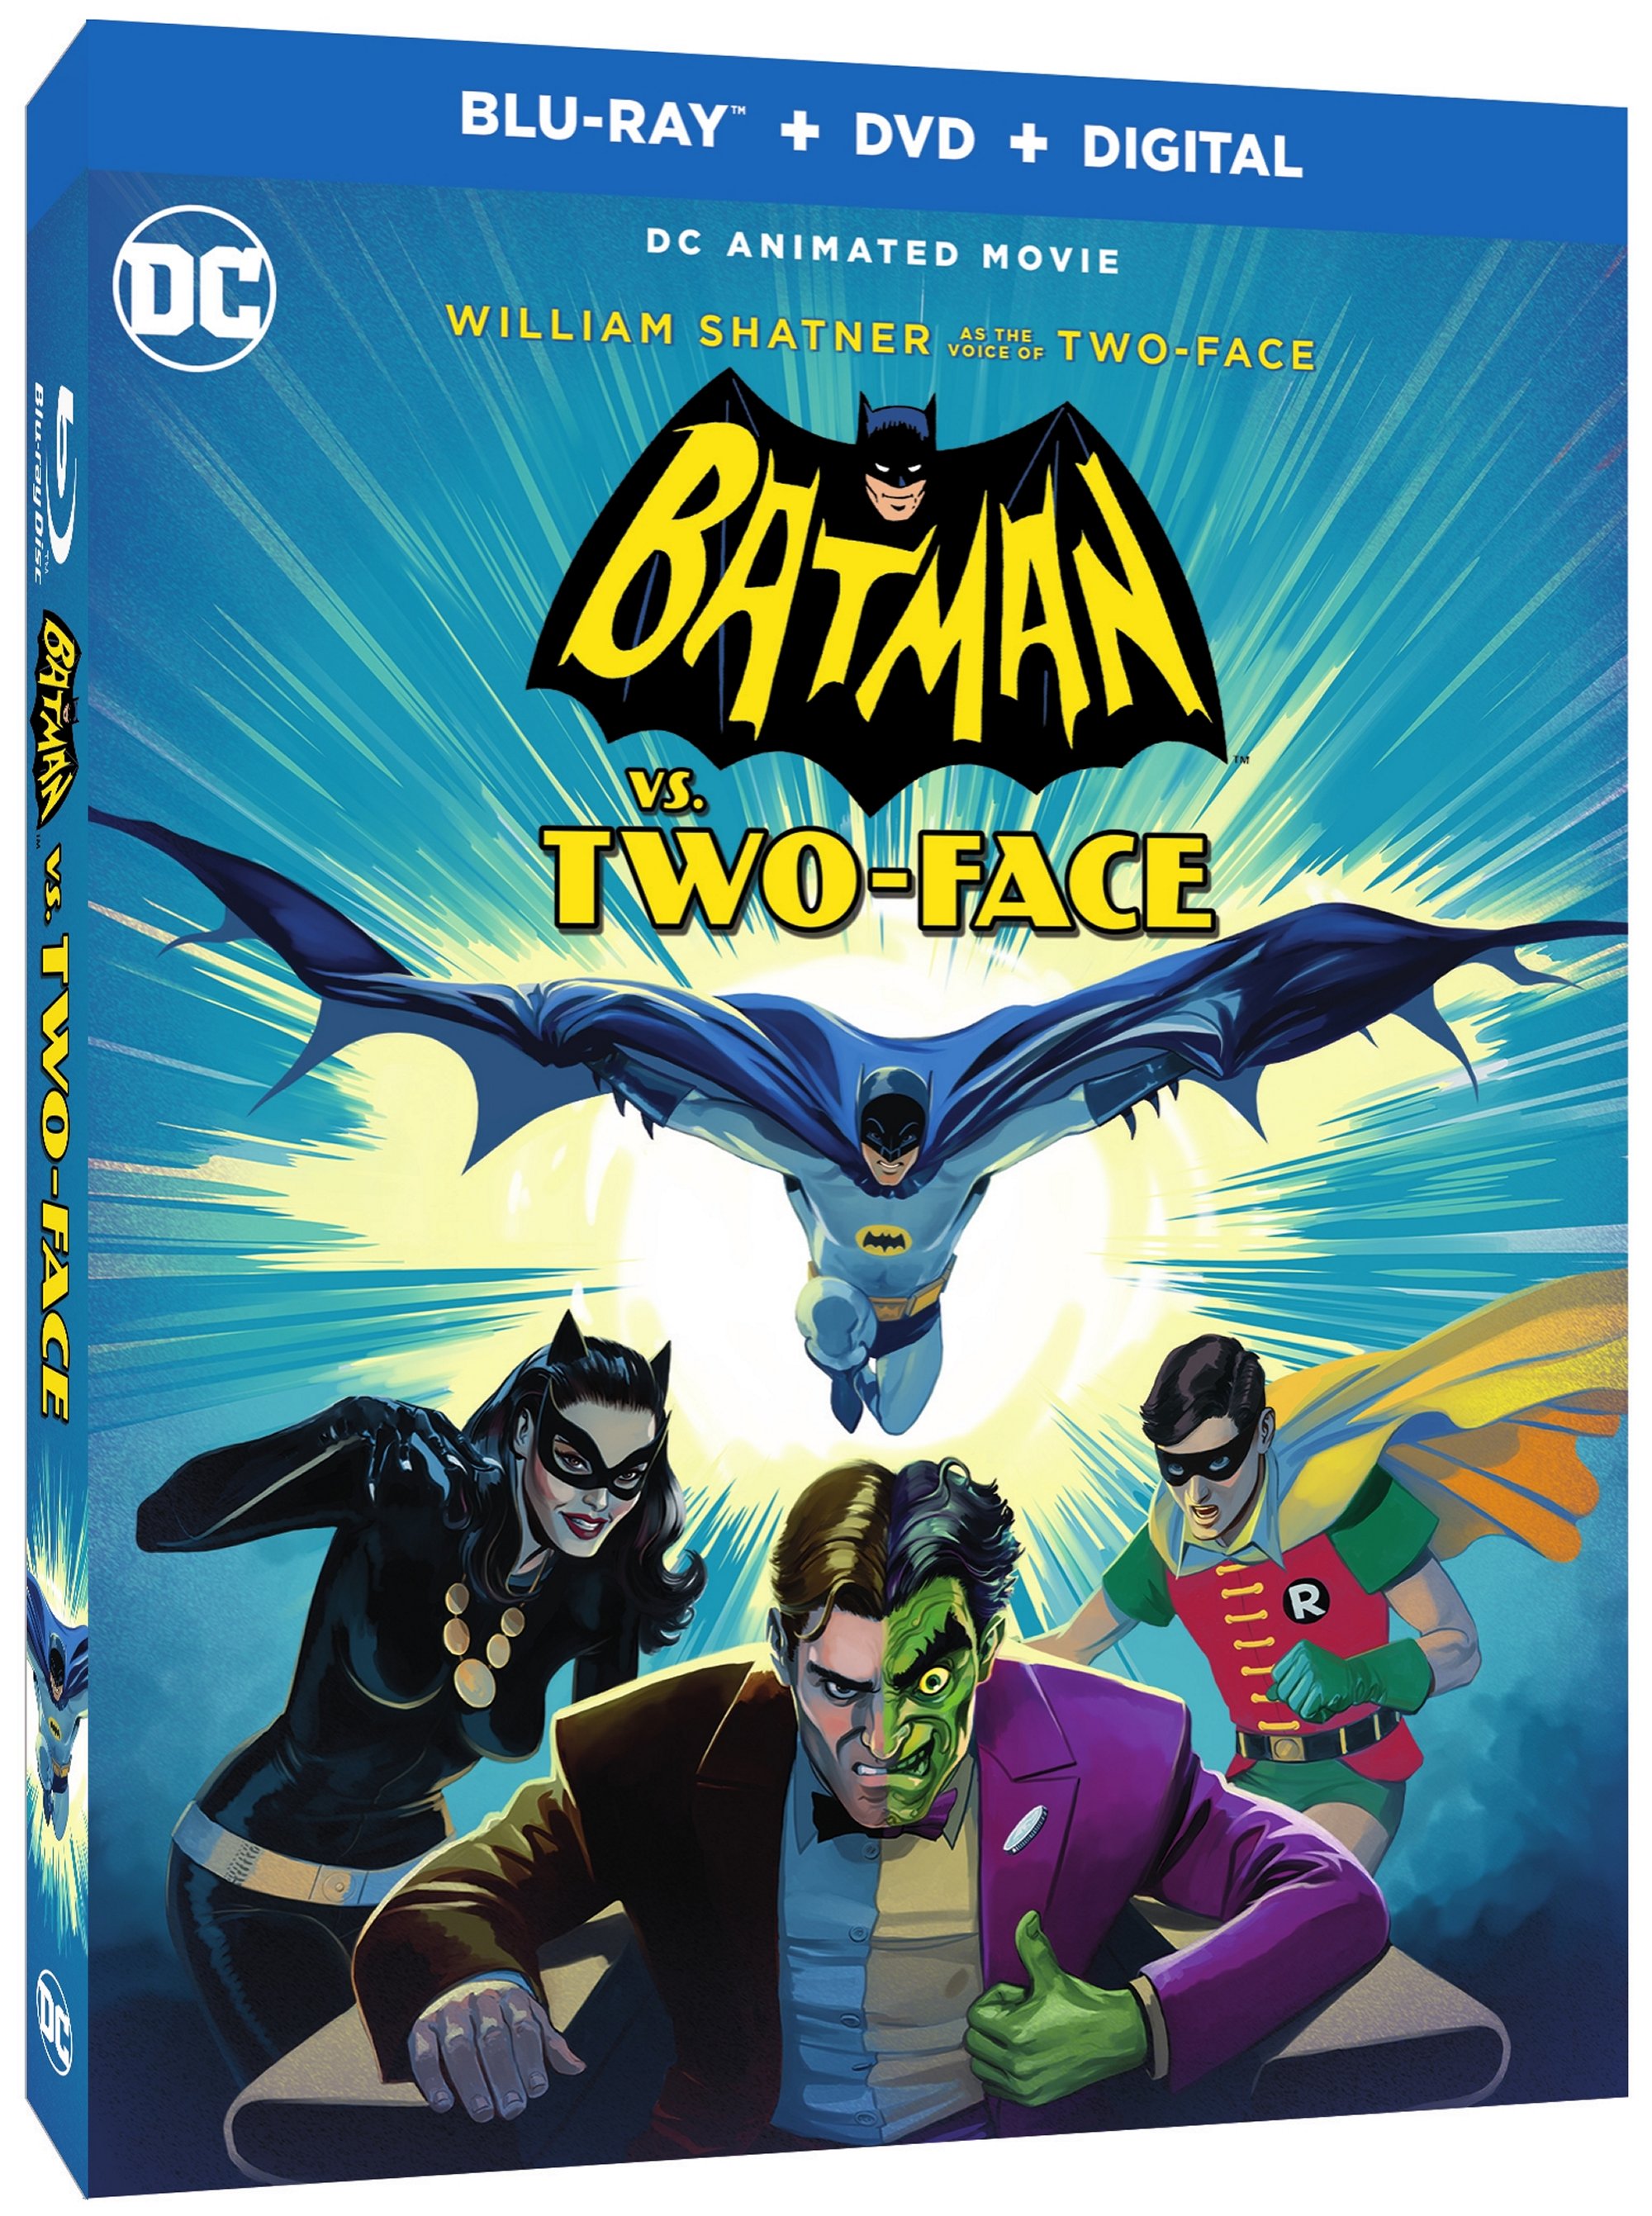 BatmanvsTwoFace3D Batman vs. Two-Face Release Date Announced